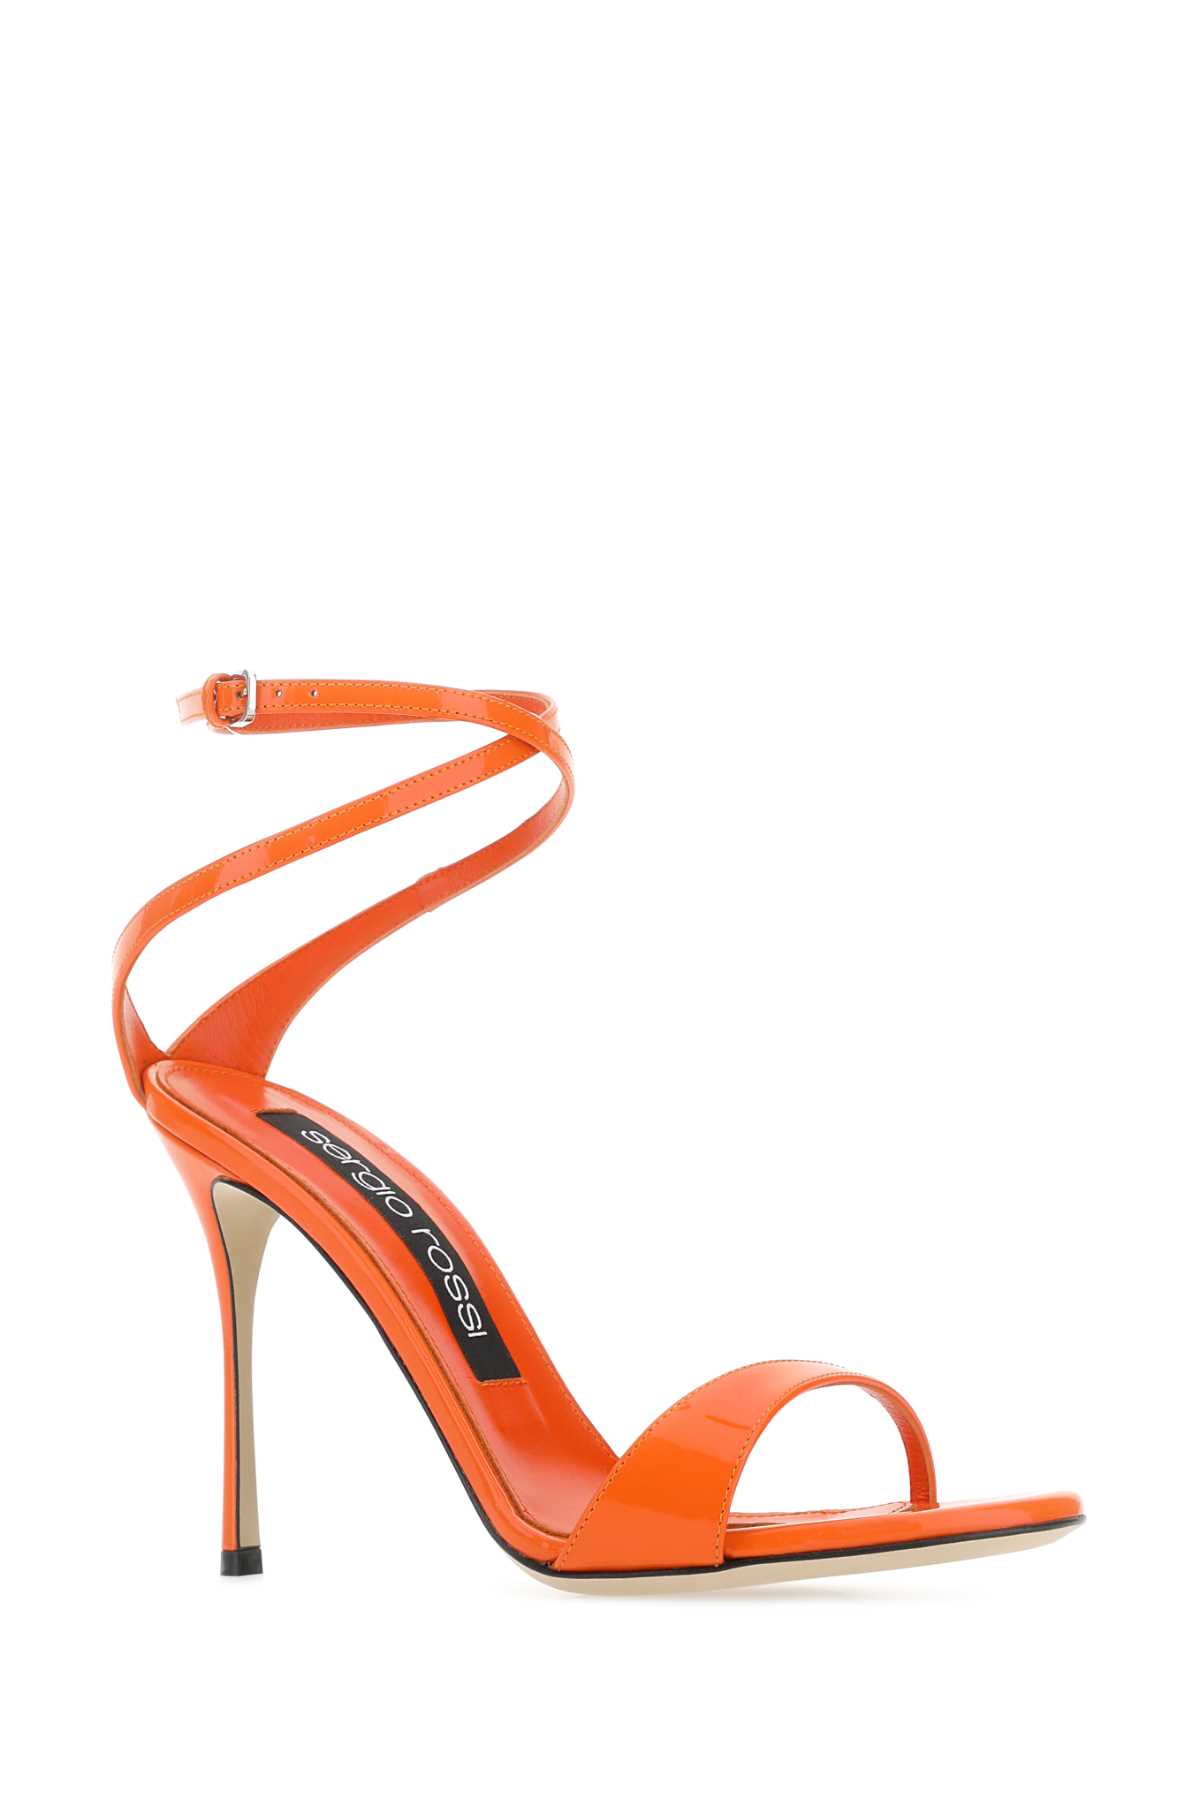 Shop Sergio Rossi Orange Leather Godiva Sandals